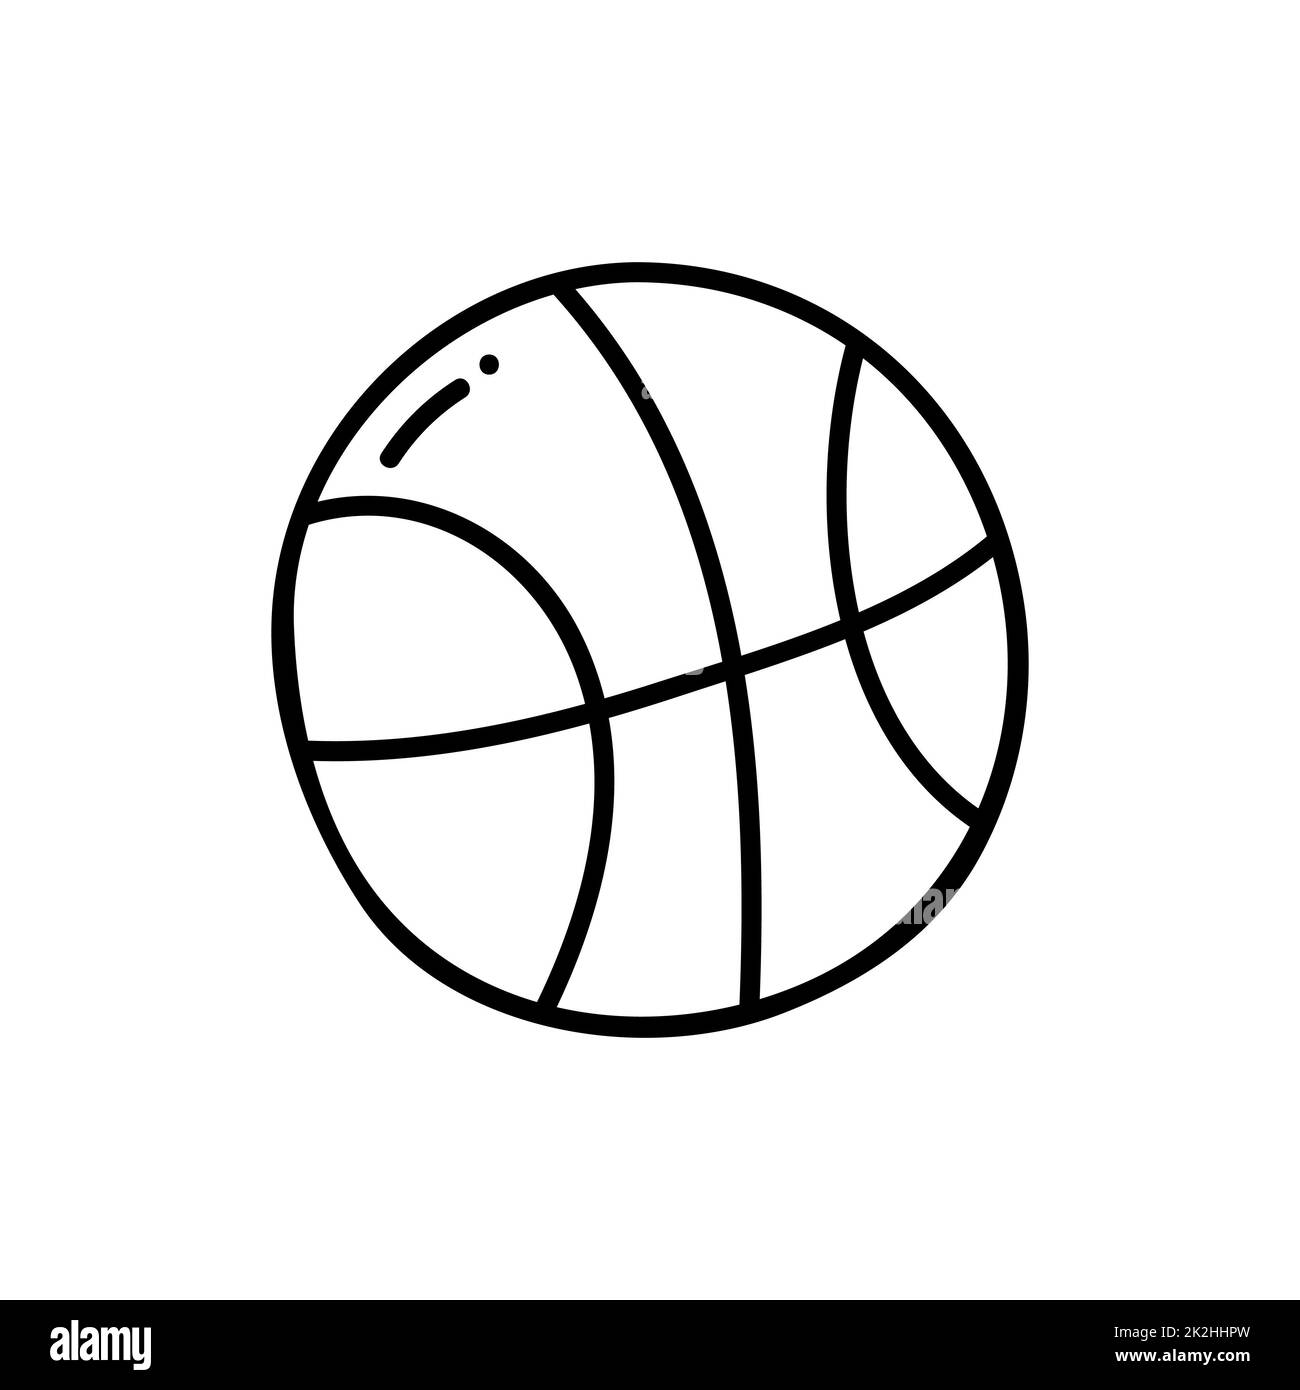 Palla da basket linea sottile icona isolata su sfondo bianco - Vector Foto Stock